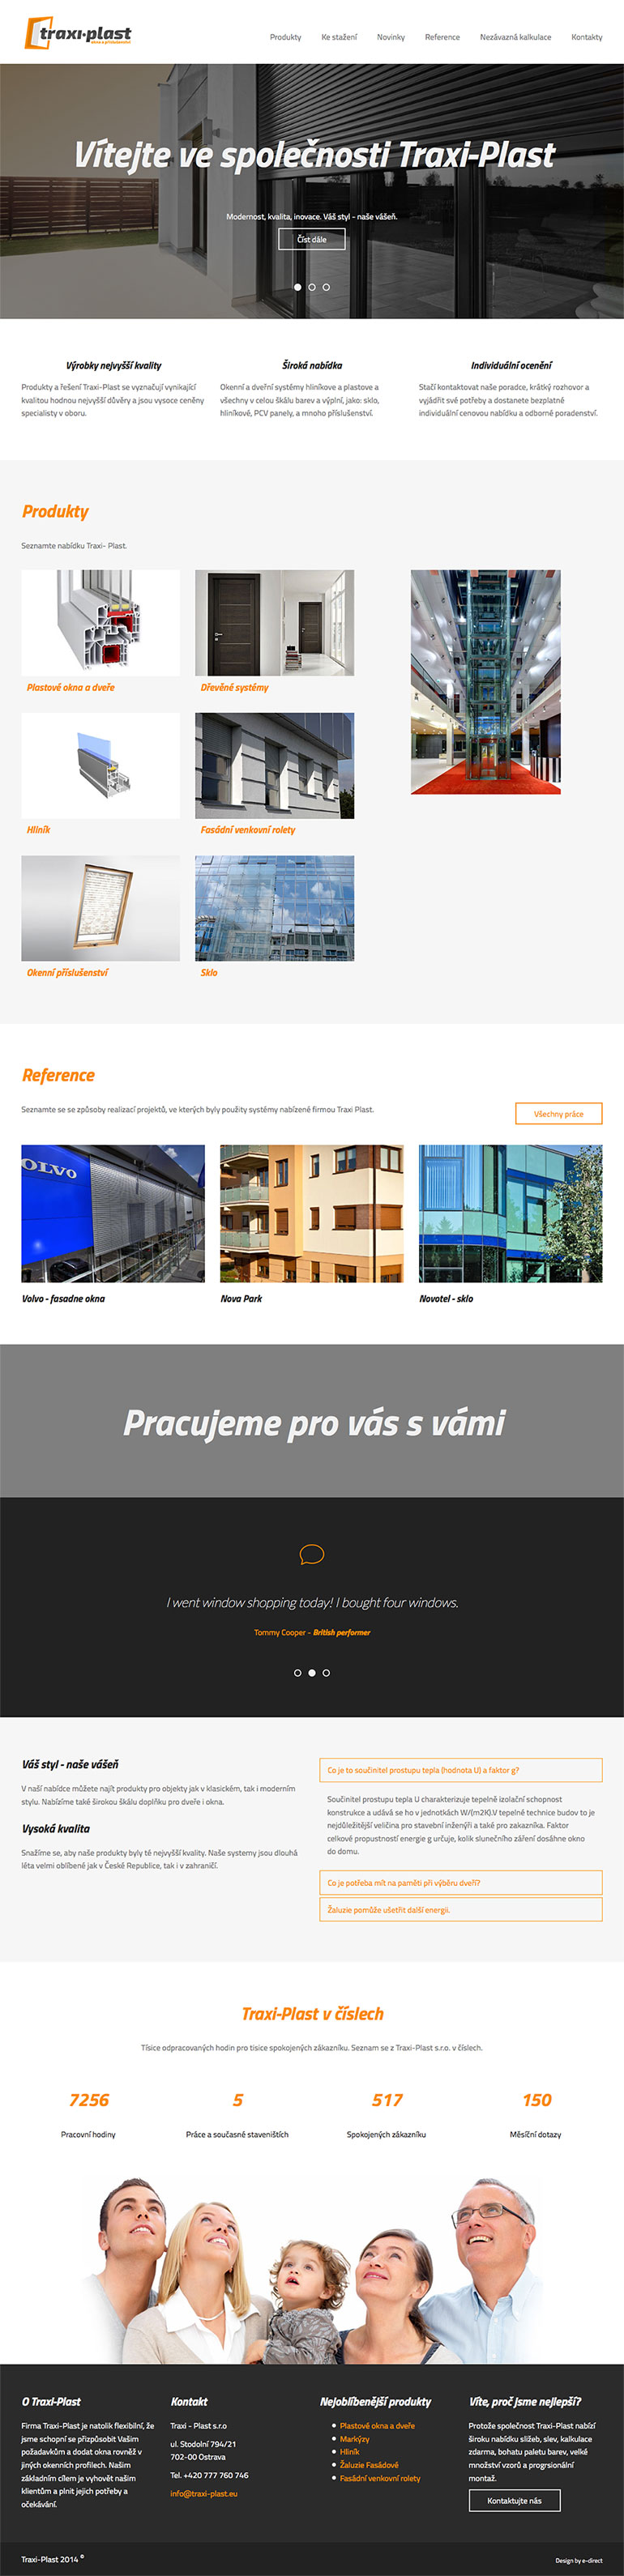 Traxi-Plast strona wizerunkowa dla czeskiego producenta profili okiennych